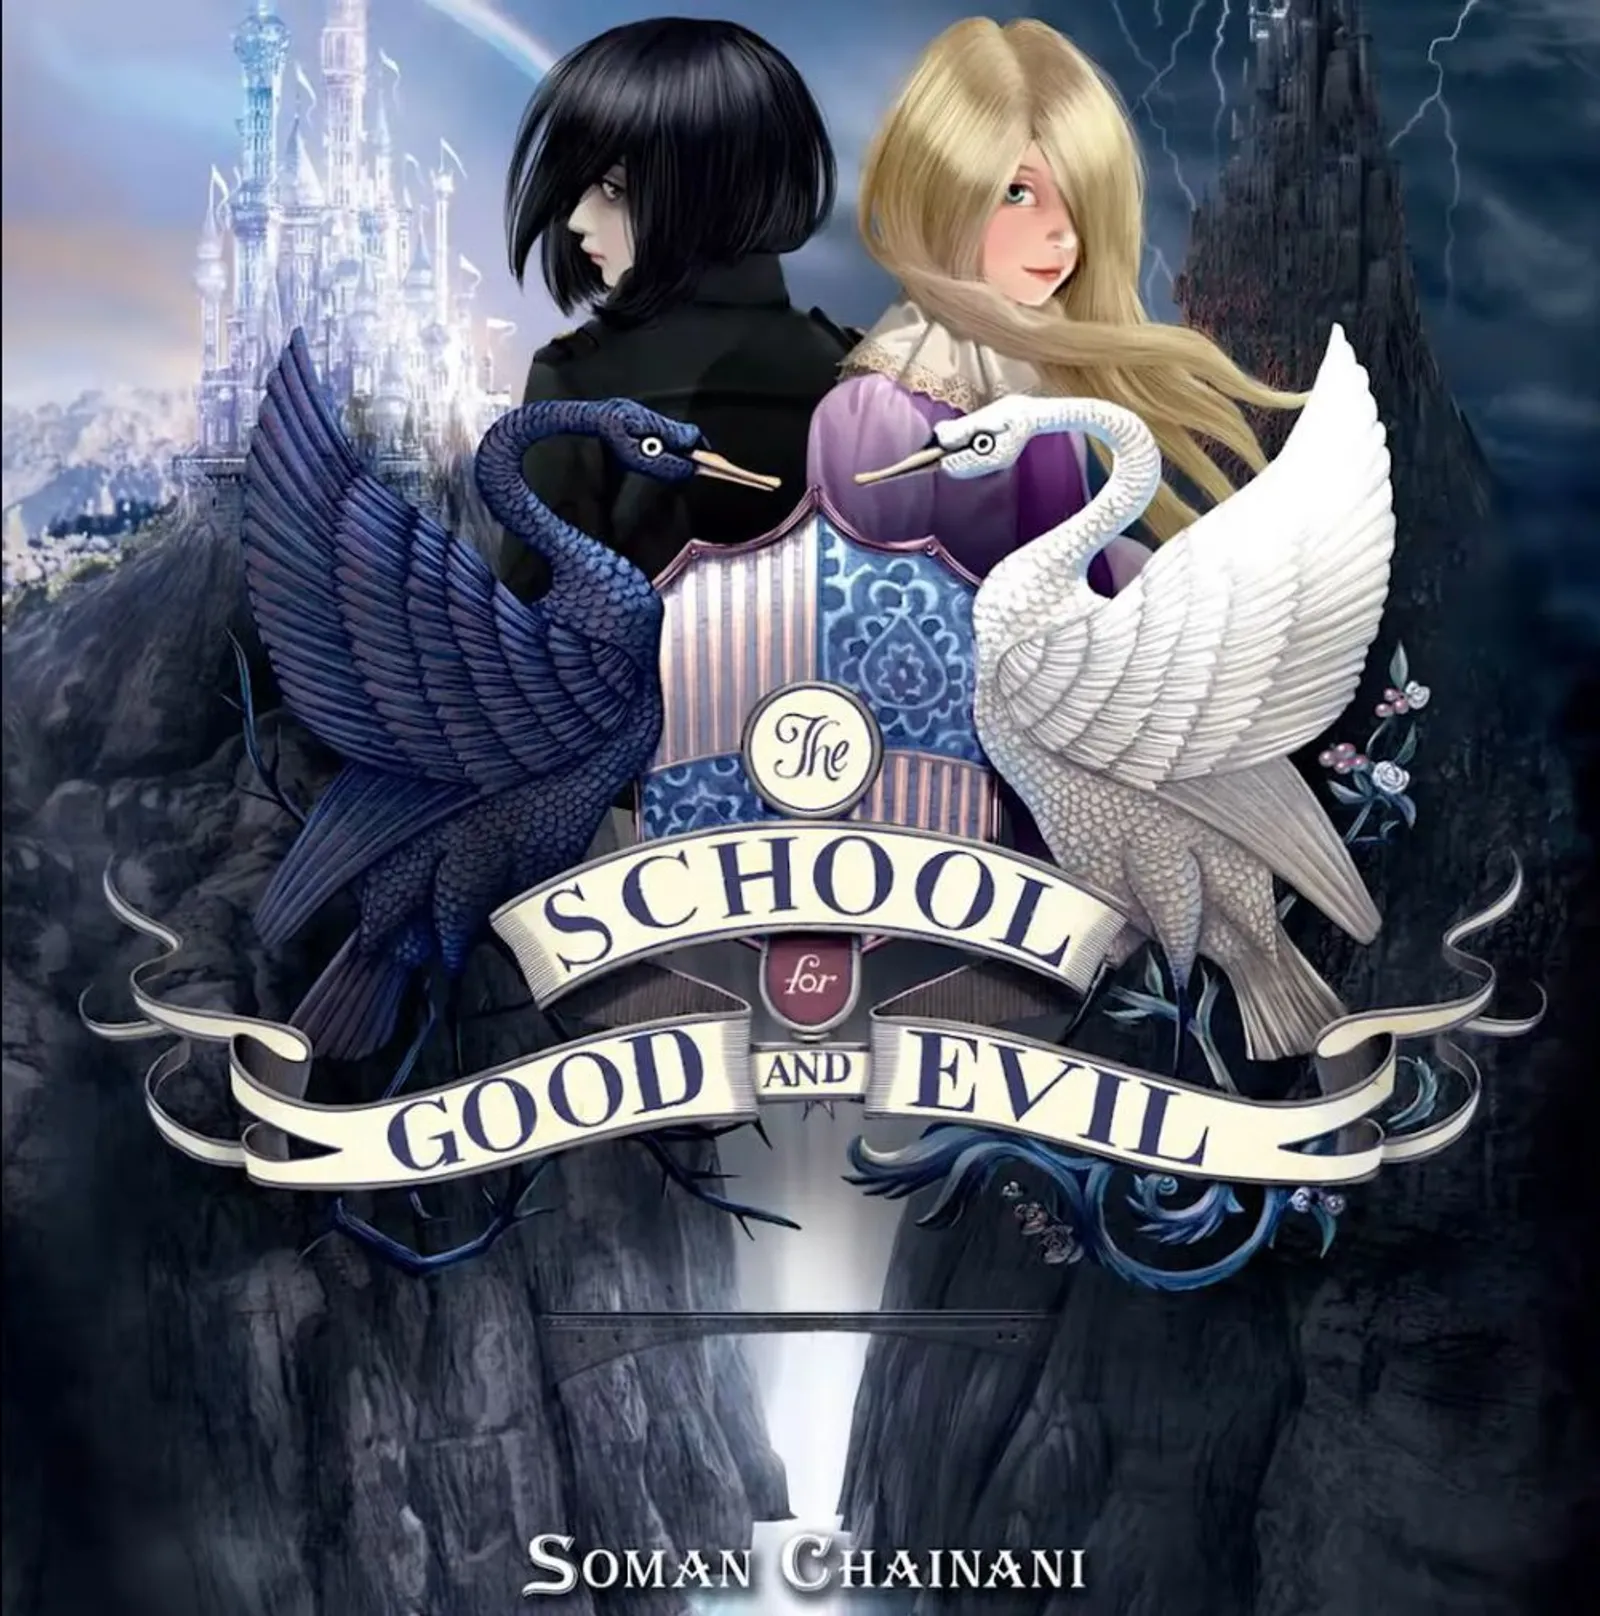 8 Fakta Film 'The School for Good and Evil' yang Akan Tayang Tahun Ini